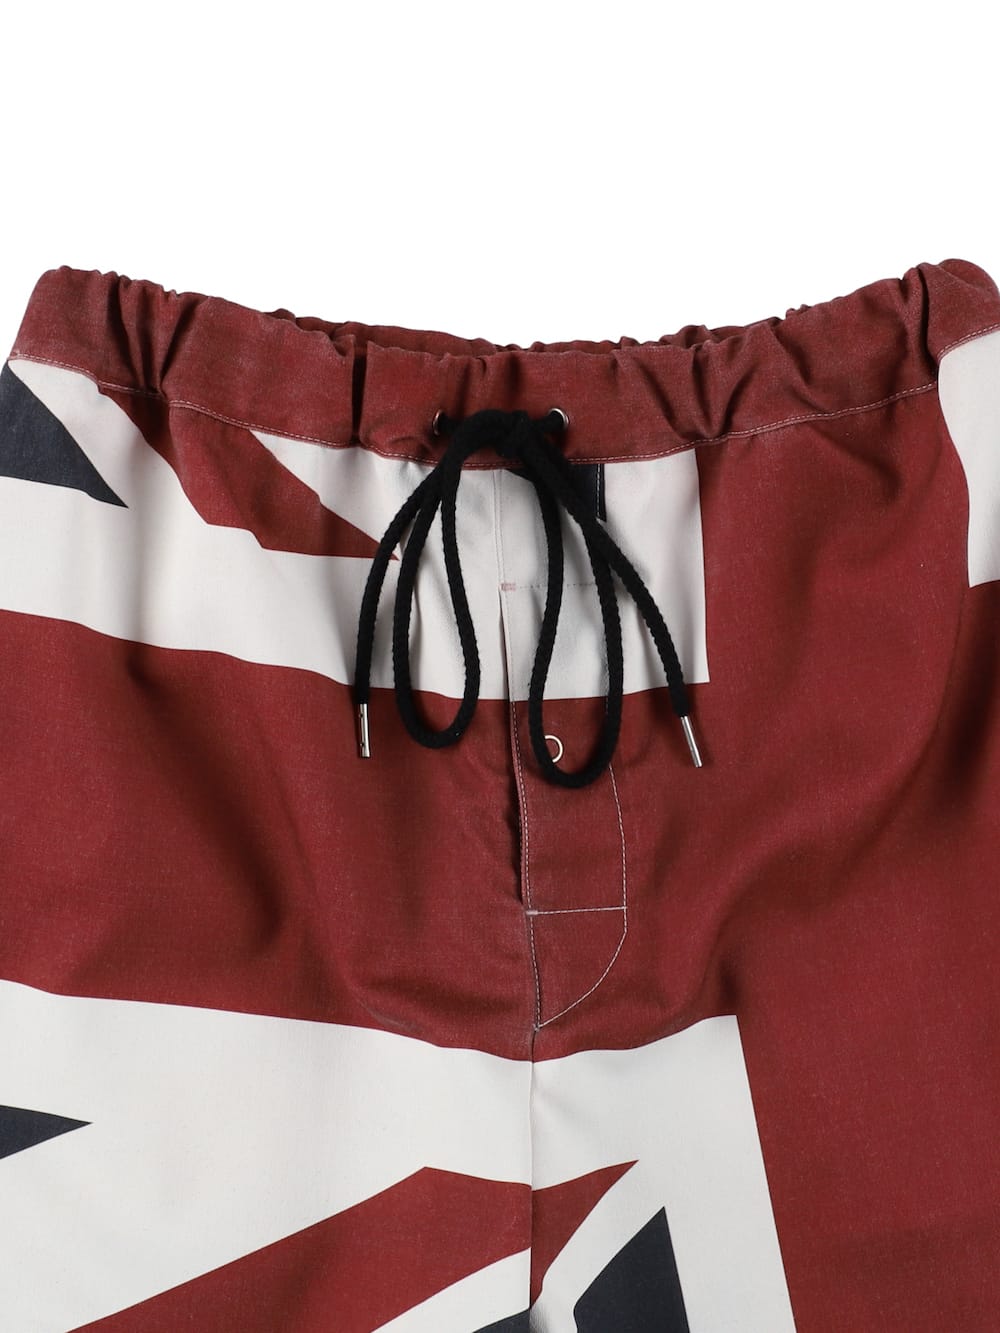 trunks shorts.(union jack)